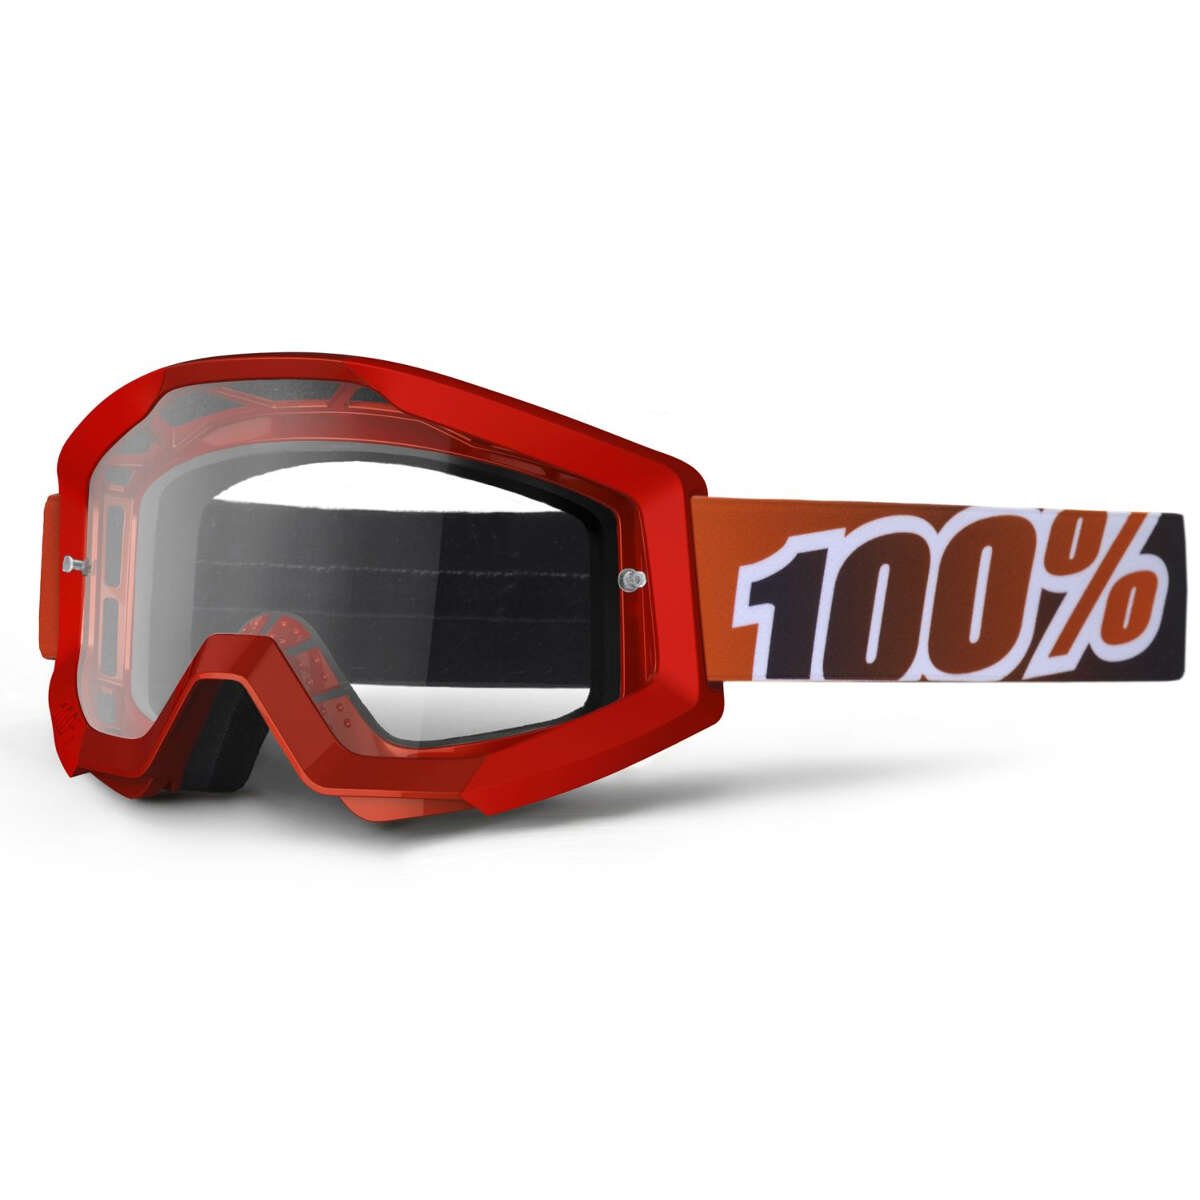 100% Maschera Strata Fire Red - Clear Anti-Fog